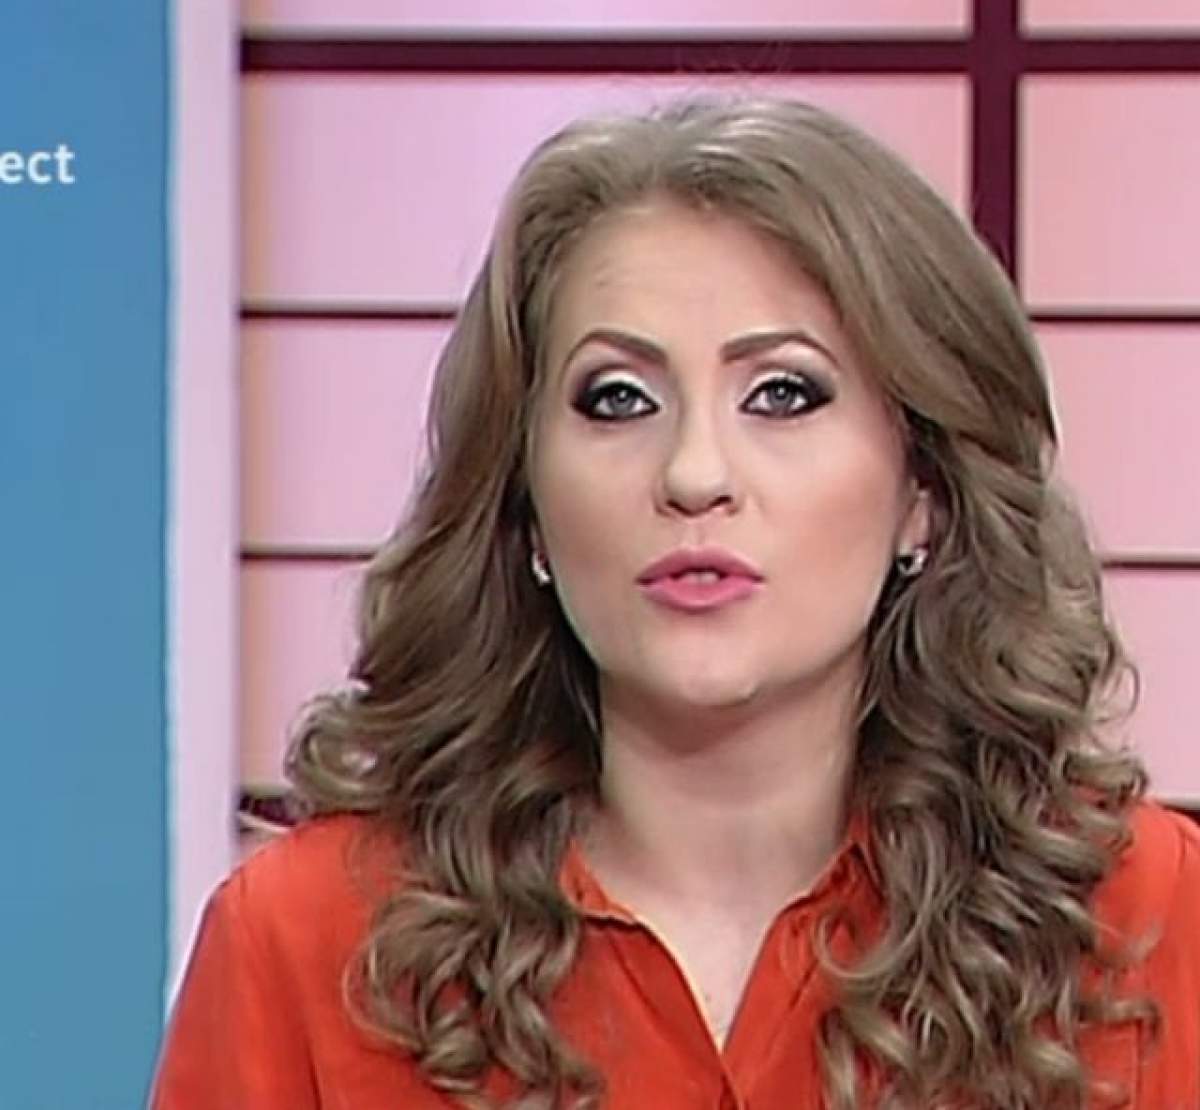 Mirela Boureanu Vaida, copleşită de pofte, la TV: "Miroase absolut demenţial"